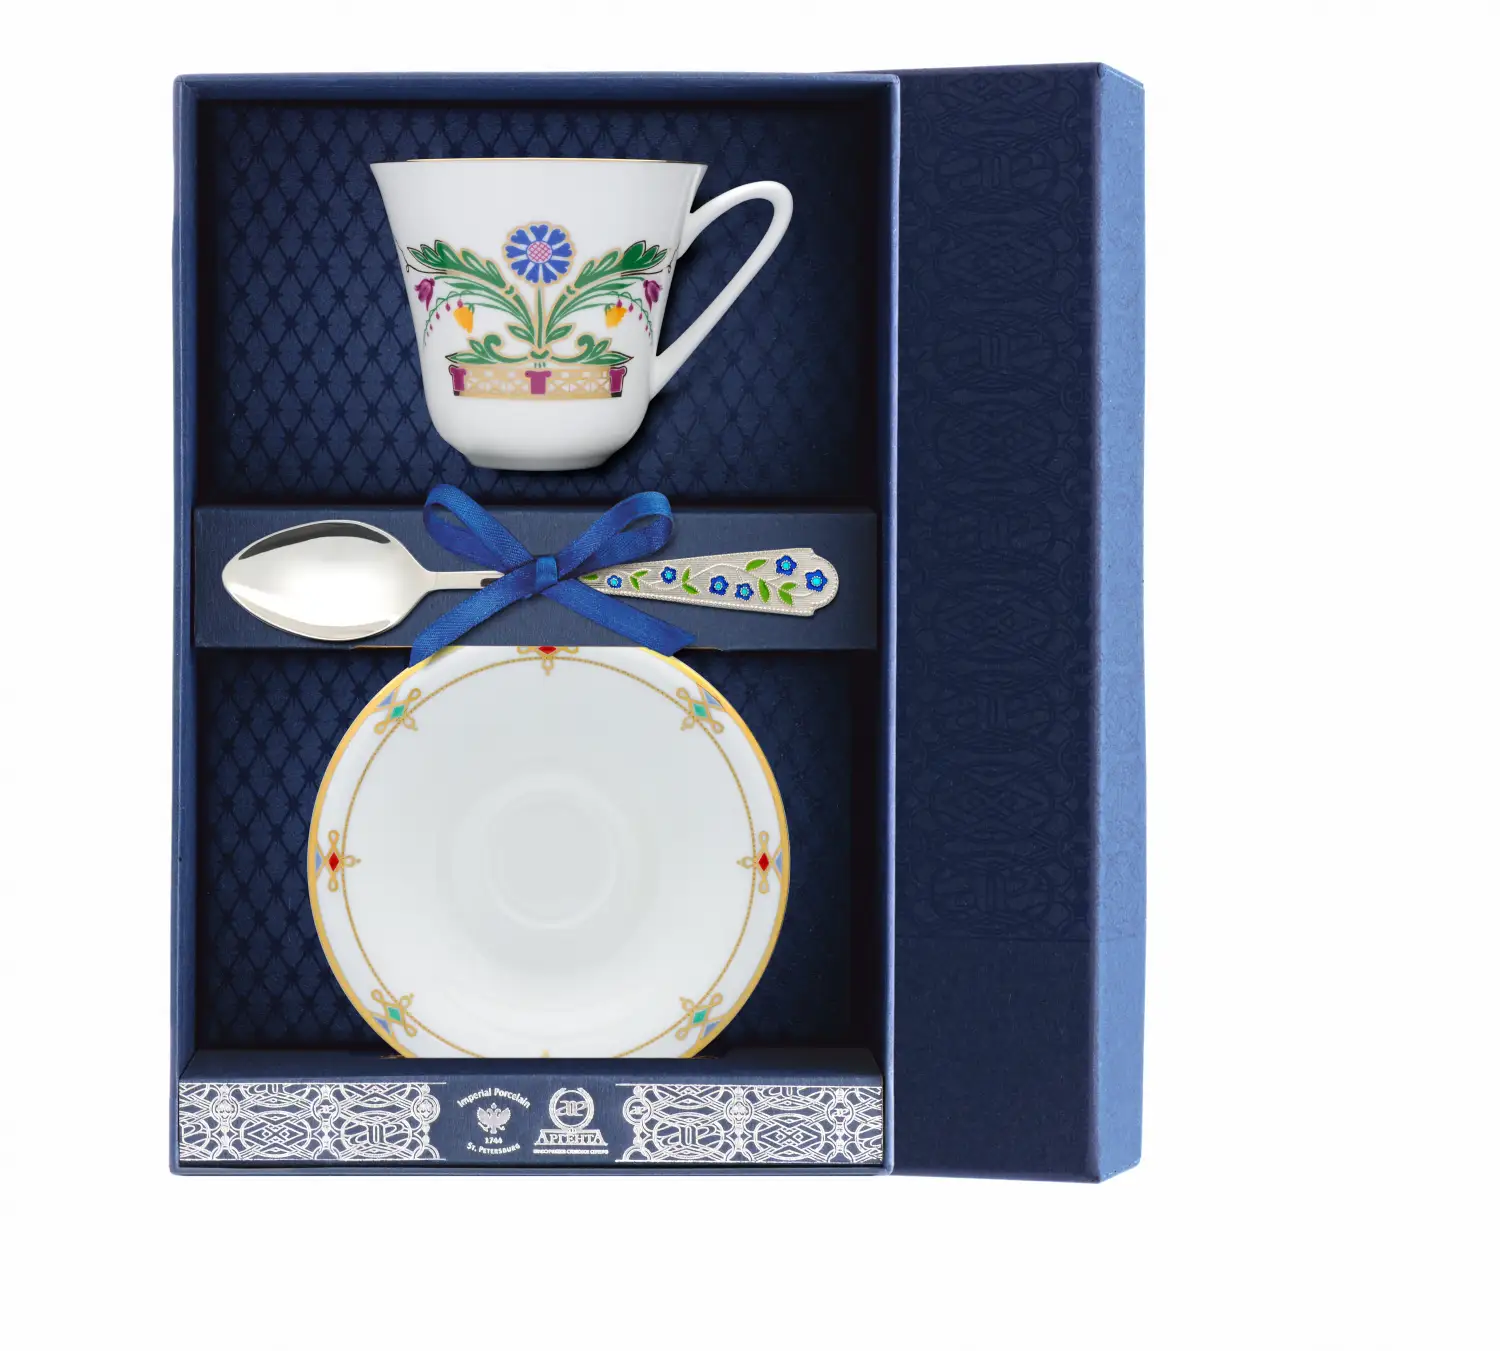 Набор чайный Сад - Замоскворечье: блюдце, ложка, чашка (Серебро 925) набор чайный тигр с позолотой ложка чашка серебро 925